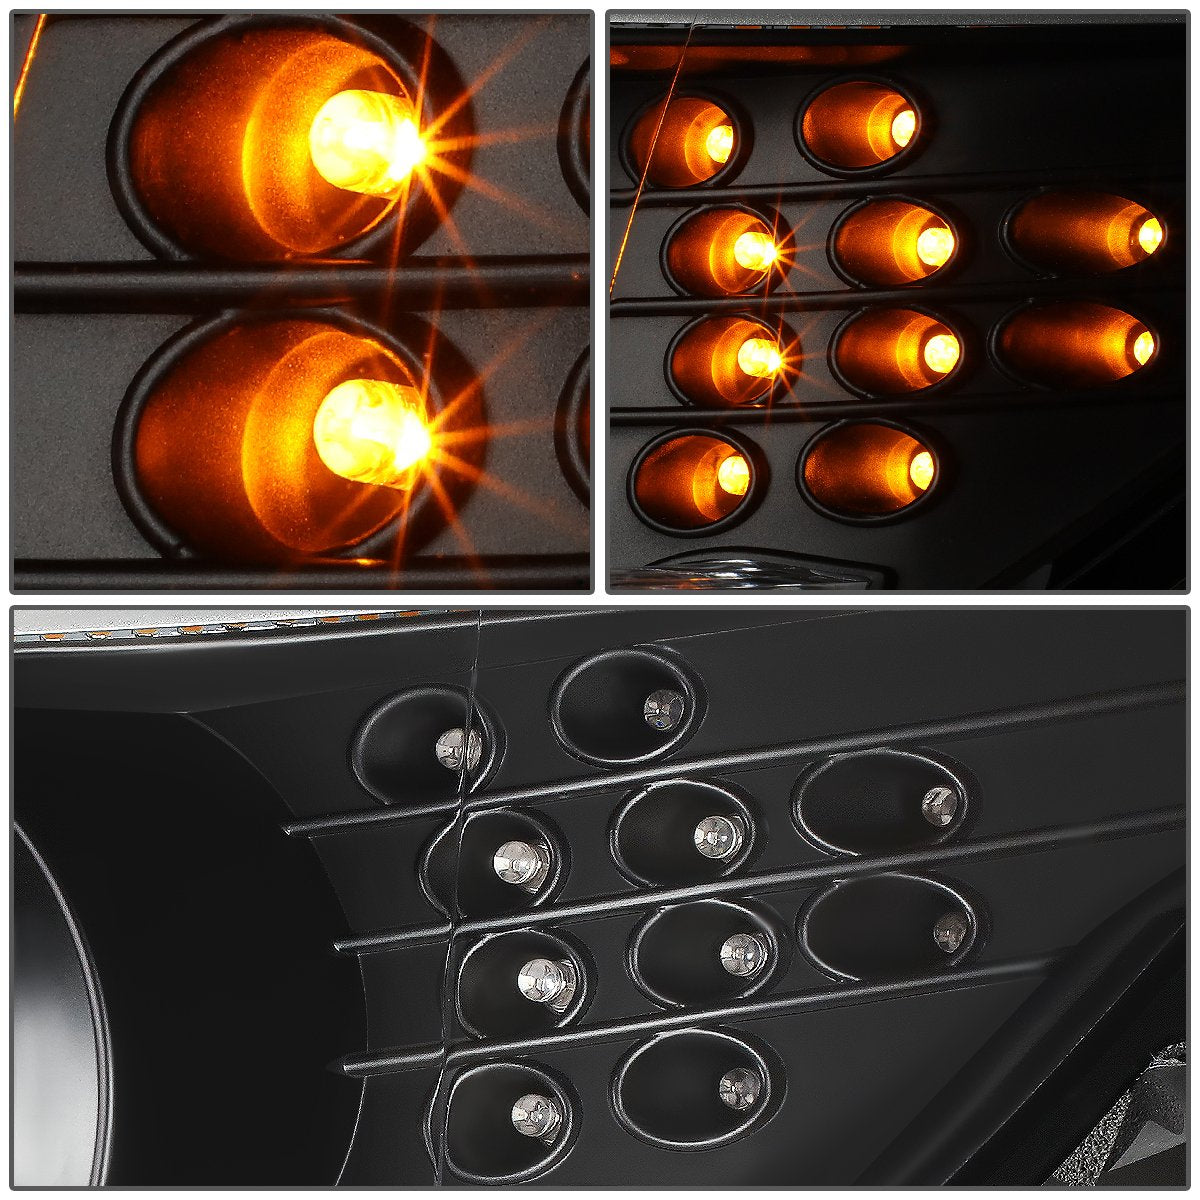 LED DRL U-Halo Projector Headlights<br>08-10 BMW 528i 535i 550i M5, 2008 528Xi 535Xi